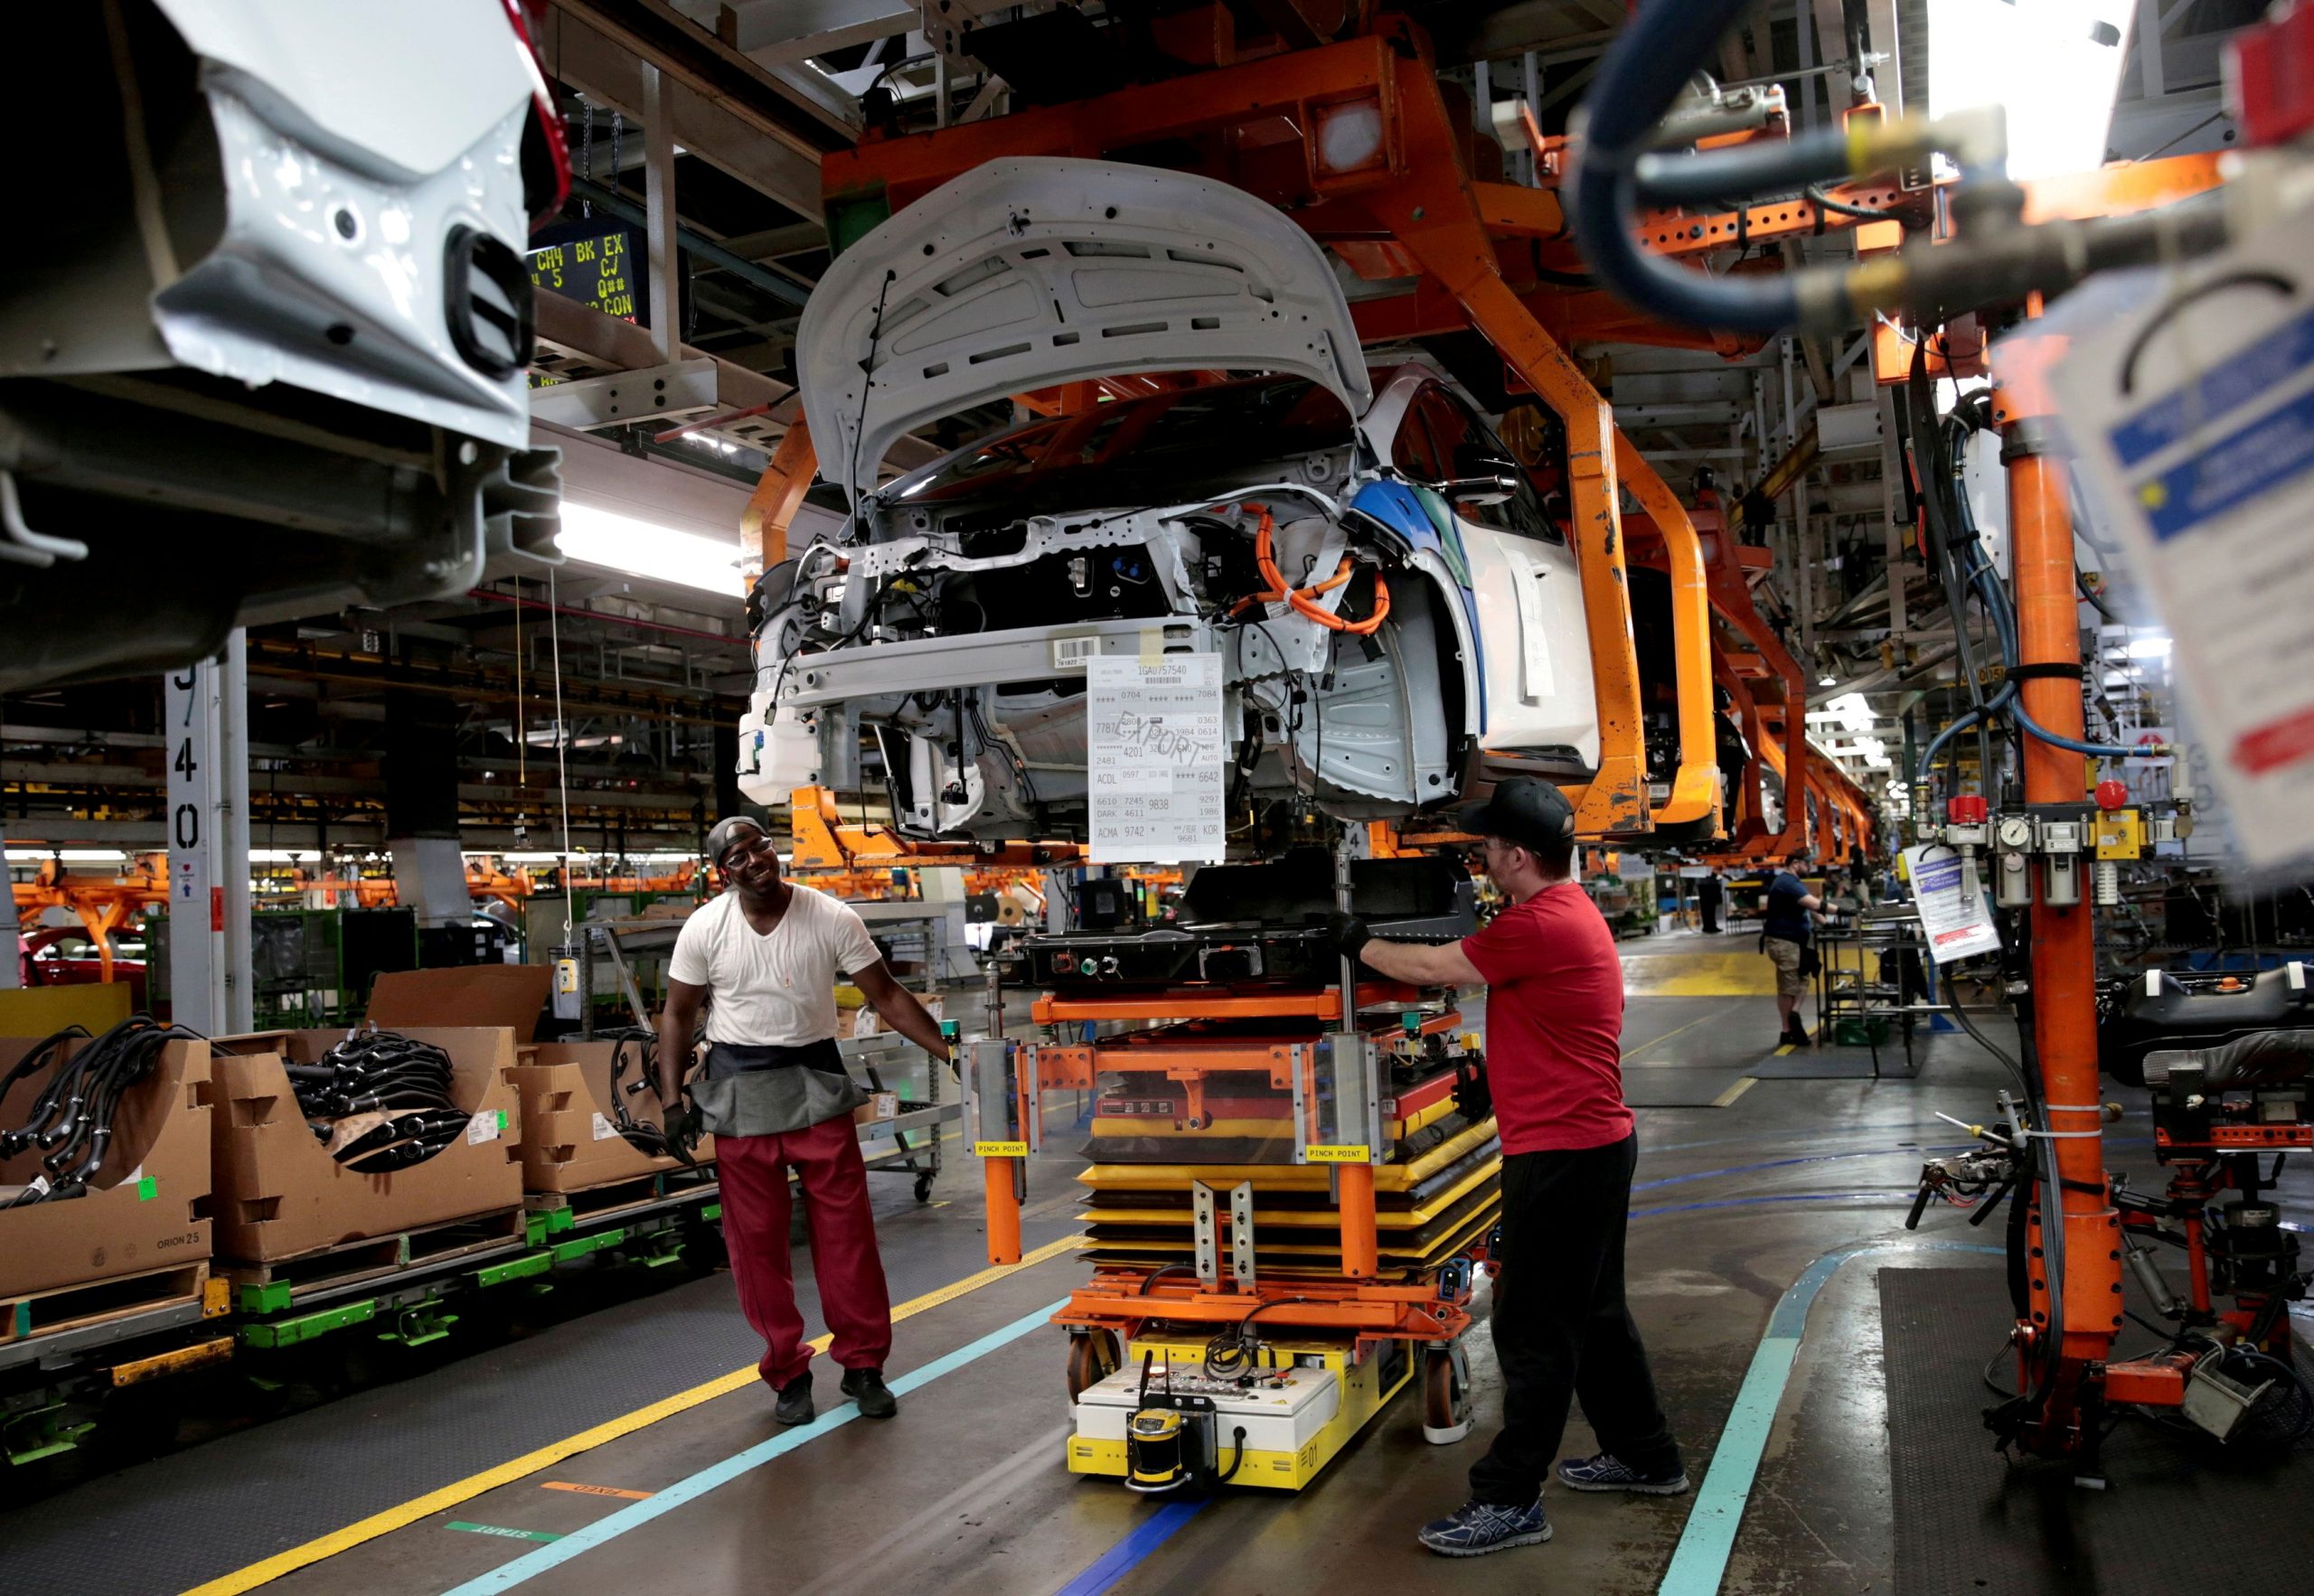 ΗΠΑ: Ιστορική απεργία της αυτοκινητοβιομηχανίας σε 3 εργοστάσια 